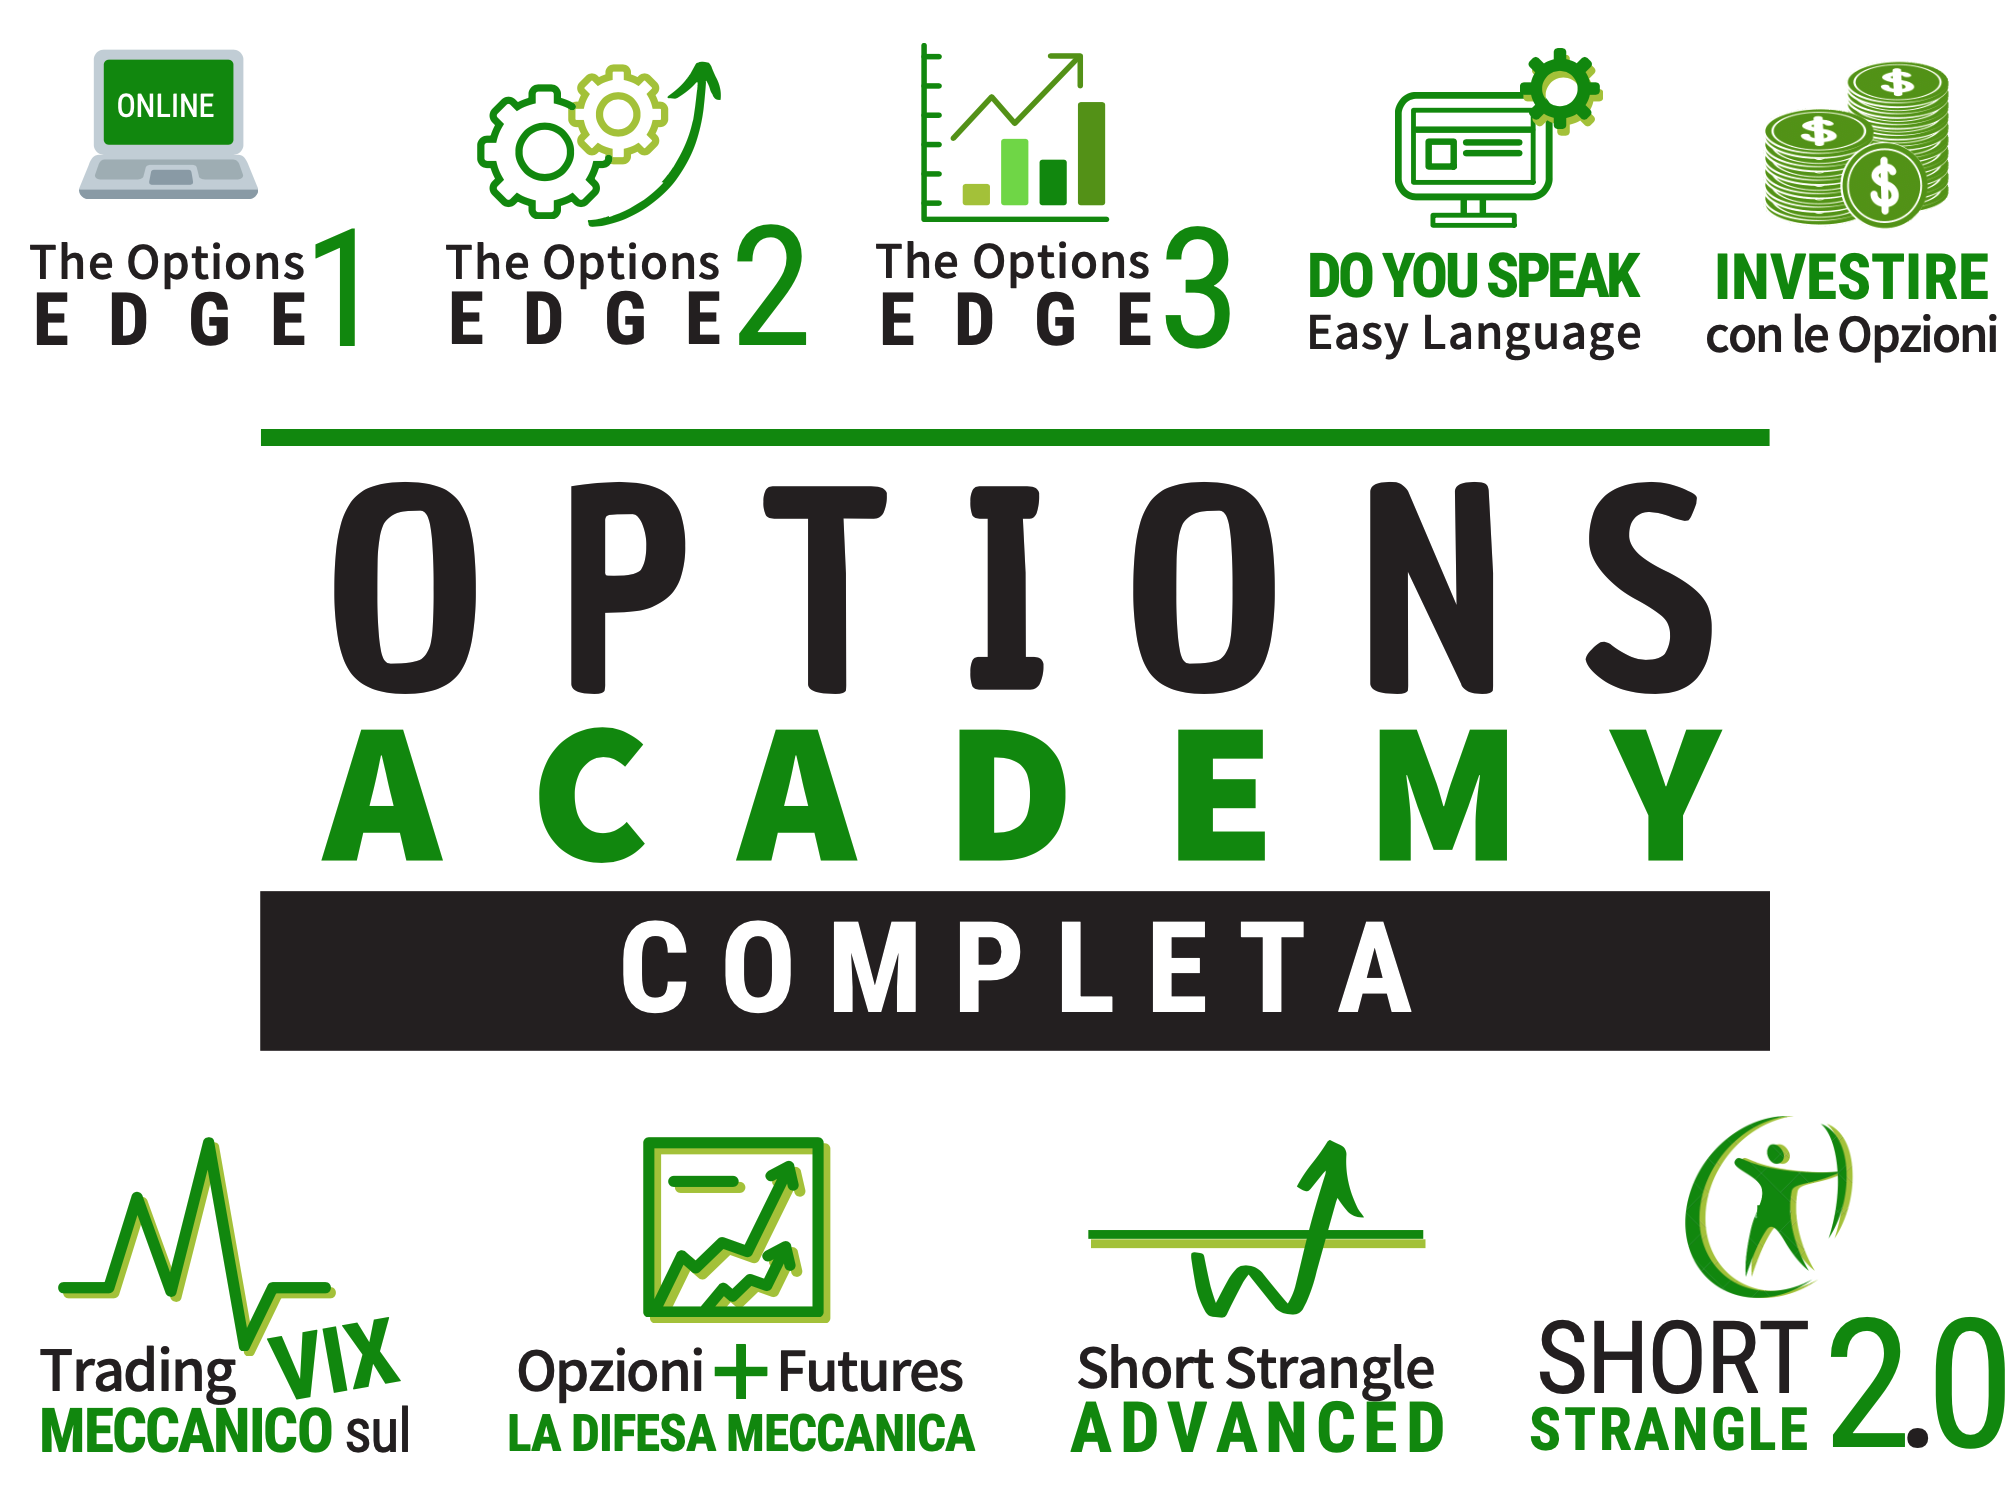 Corso Opzioni trading academy,corso trading opzioni, corso opzioni, trading in opzioni, opzioni trading, corsi opzioni, trading con le opzioni